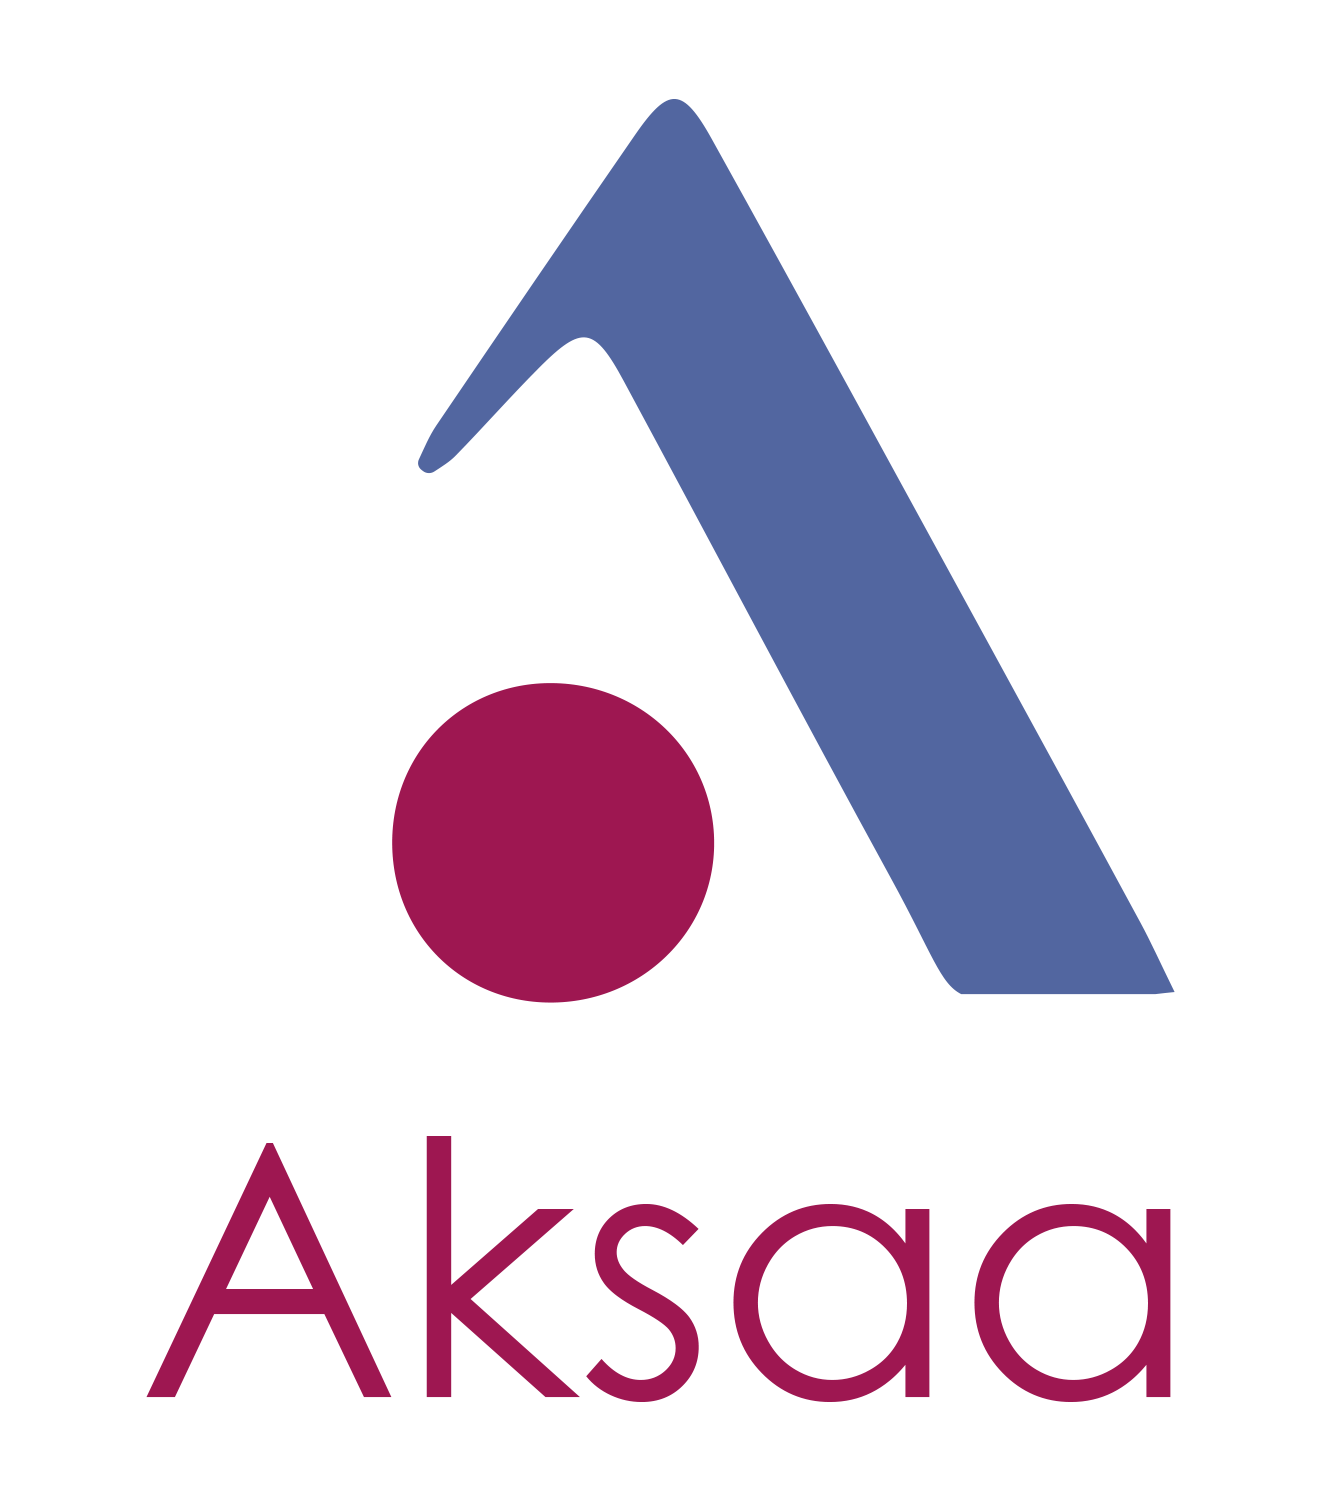 Aksaa logo